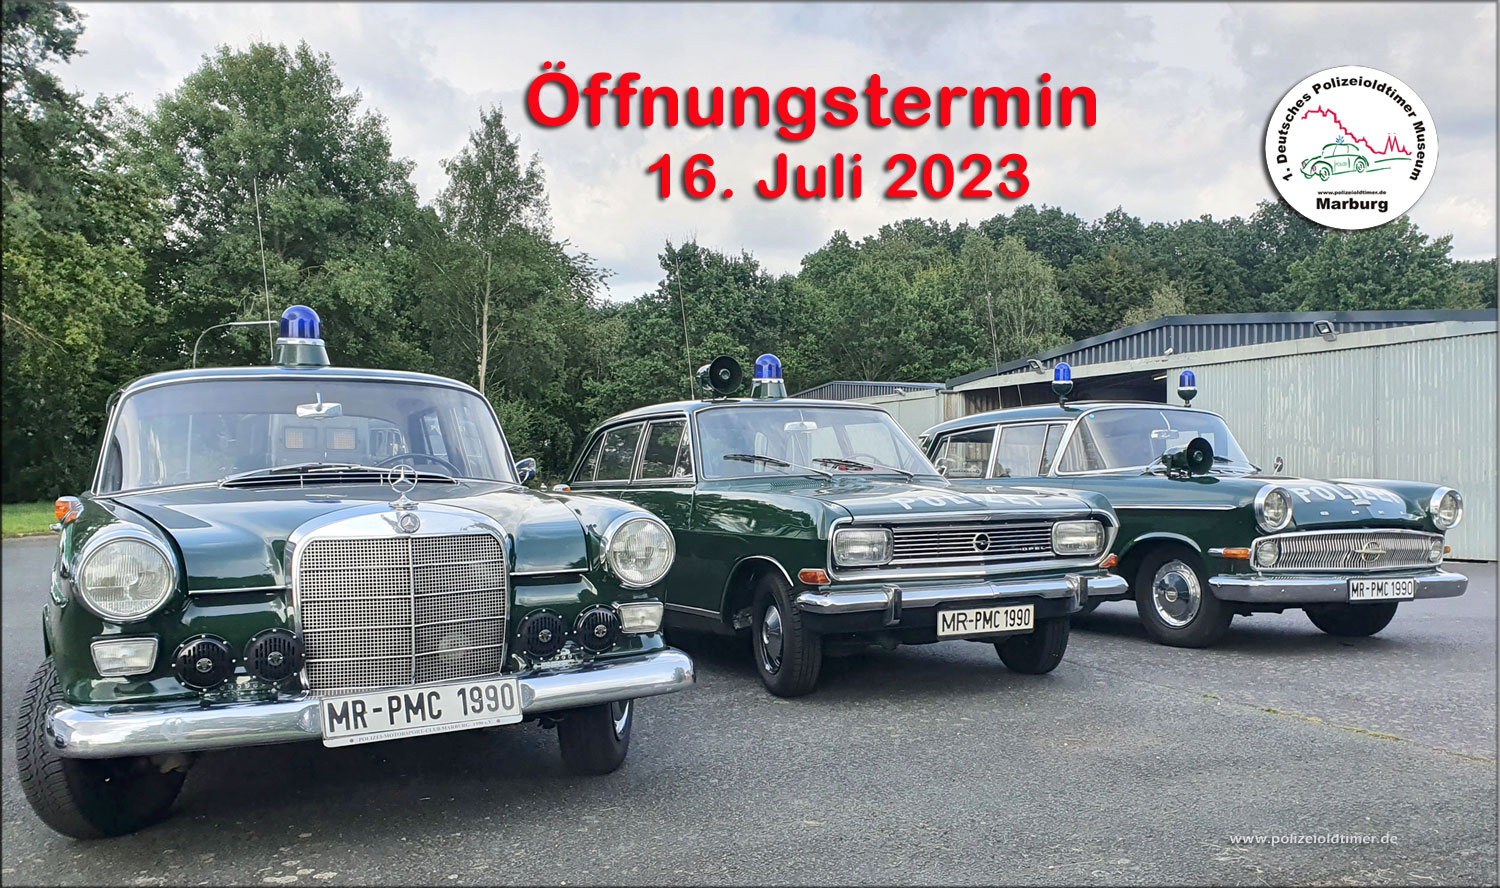 Zur Öffnung des Polizeioldtimer Museum Marburg am 16. Juli 2023 stehen wieder über 100 Polizeioldies bereit